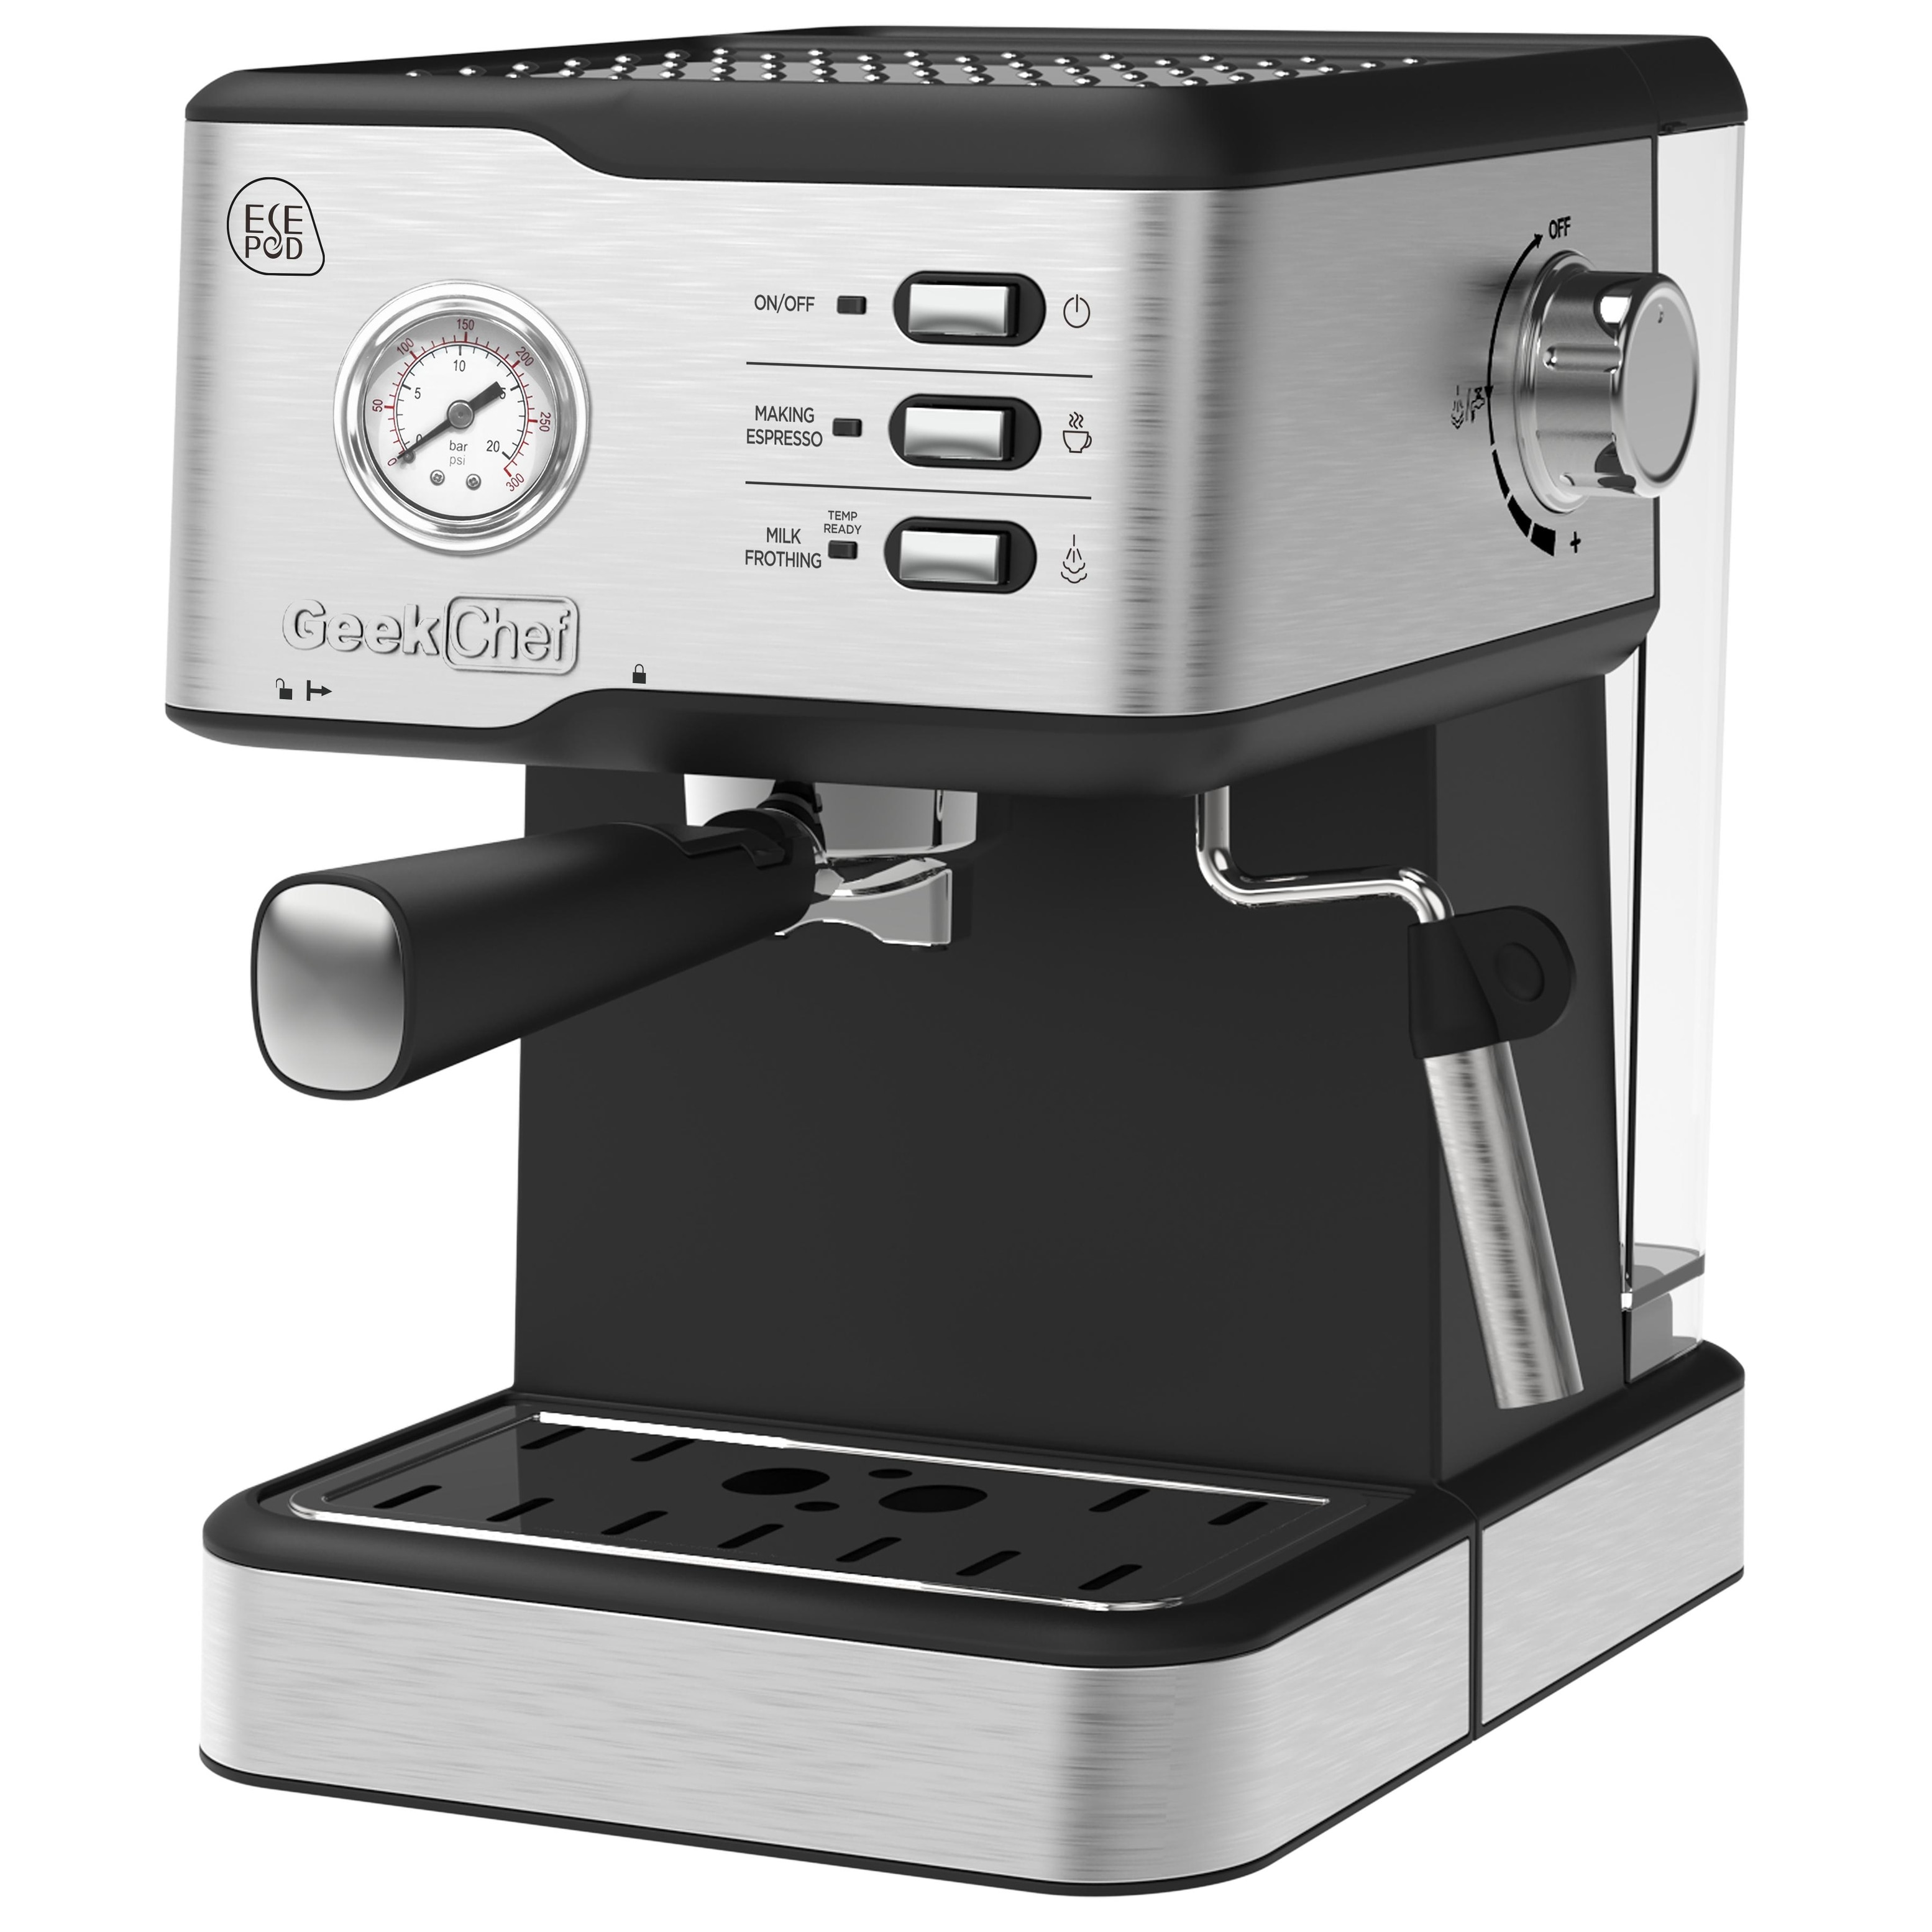 Chef Espresso Machine, Espresso and Cappuccino latte Maker 20 Bar Pump Coffee Machine Compatible with ESE POD capsules